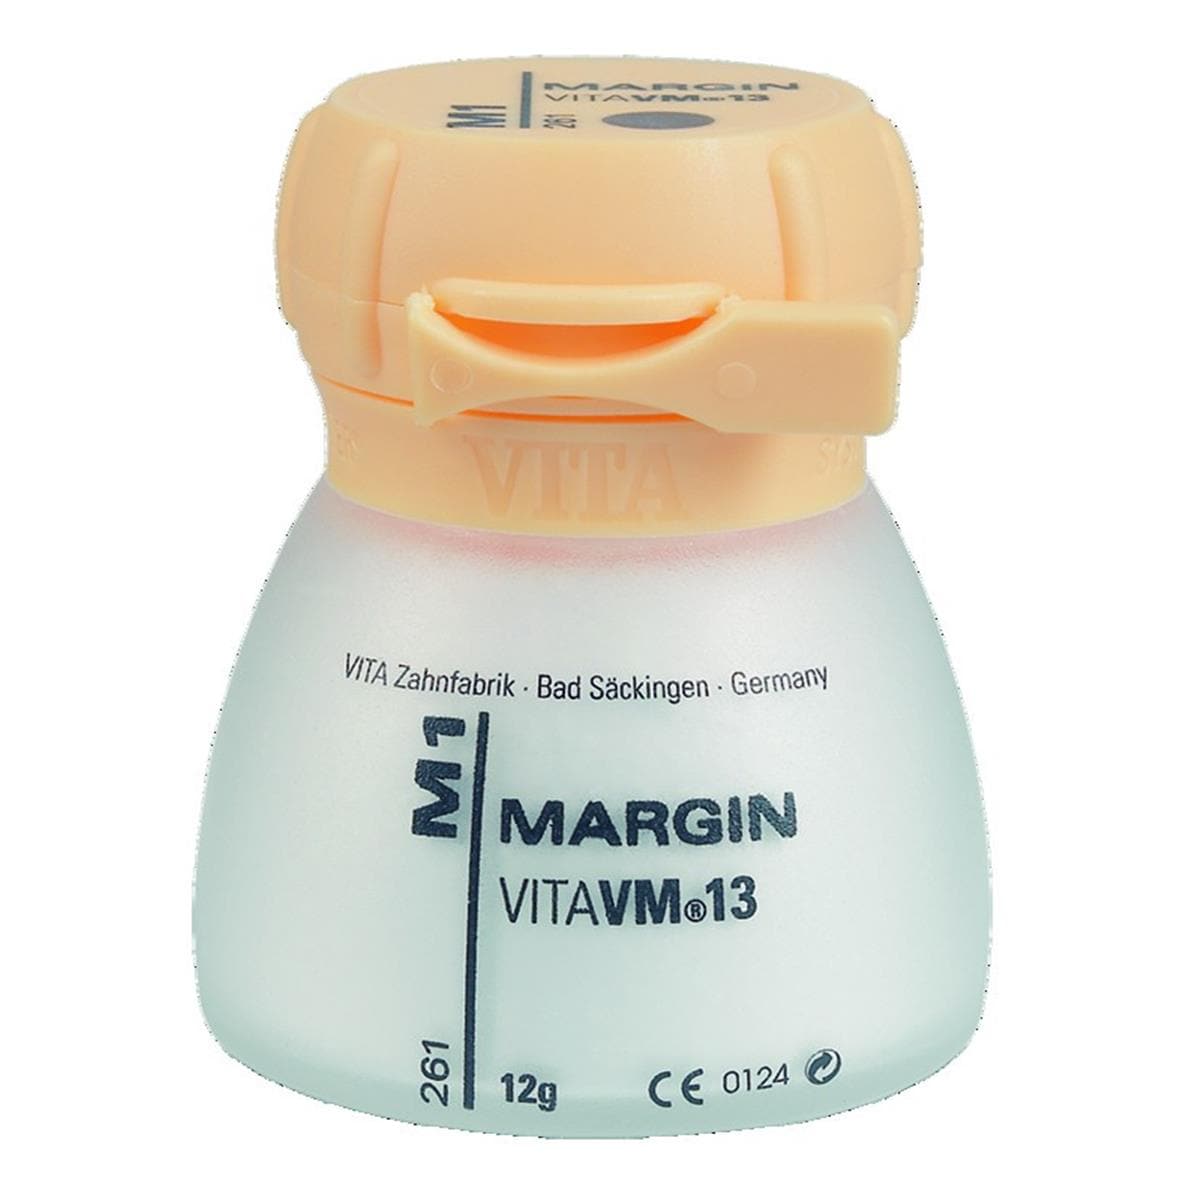 VM13 VITA - Margin - M1 - Le pot de 12 g